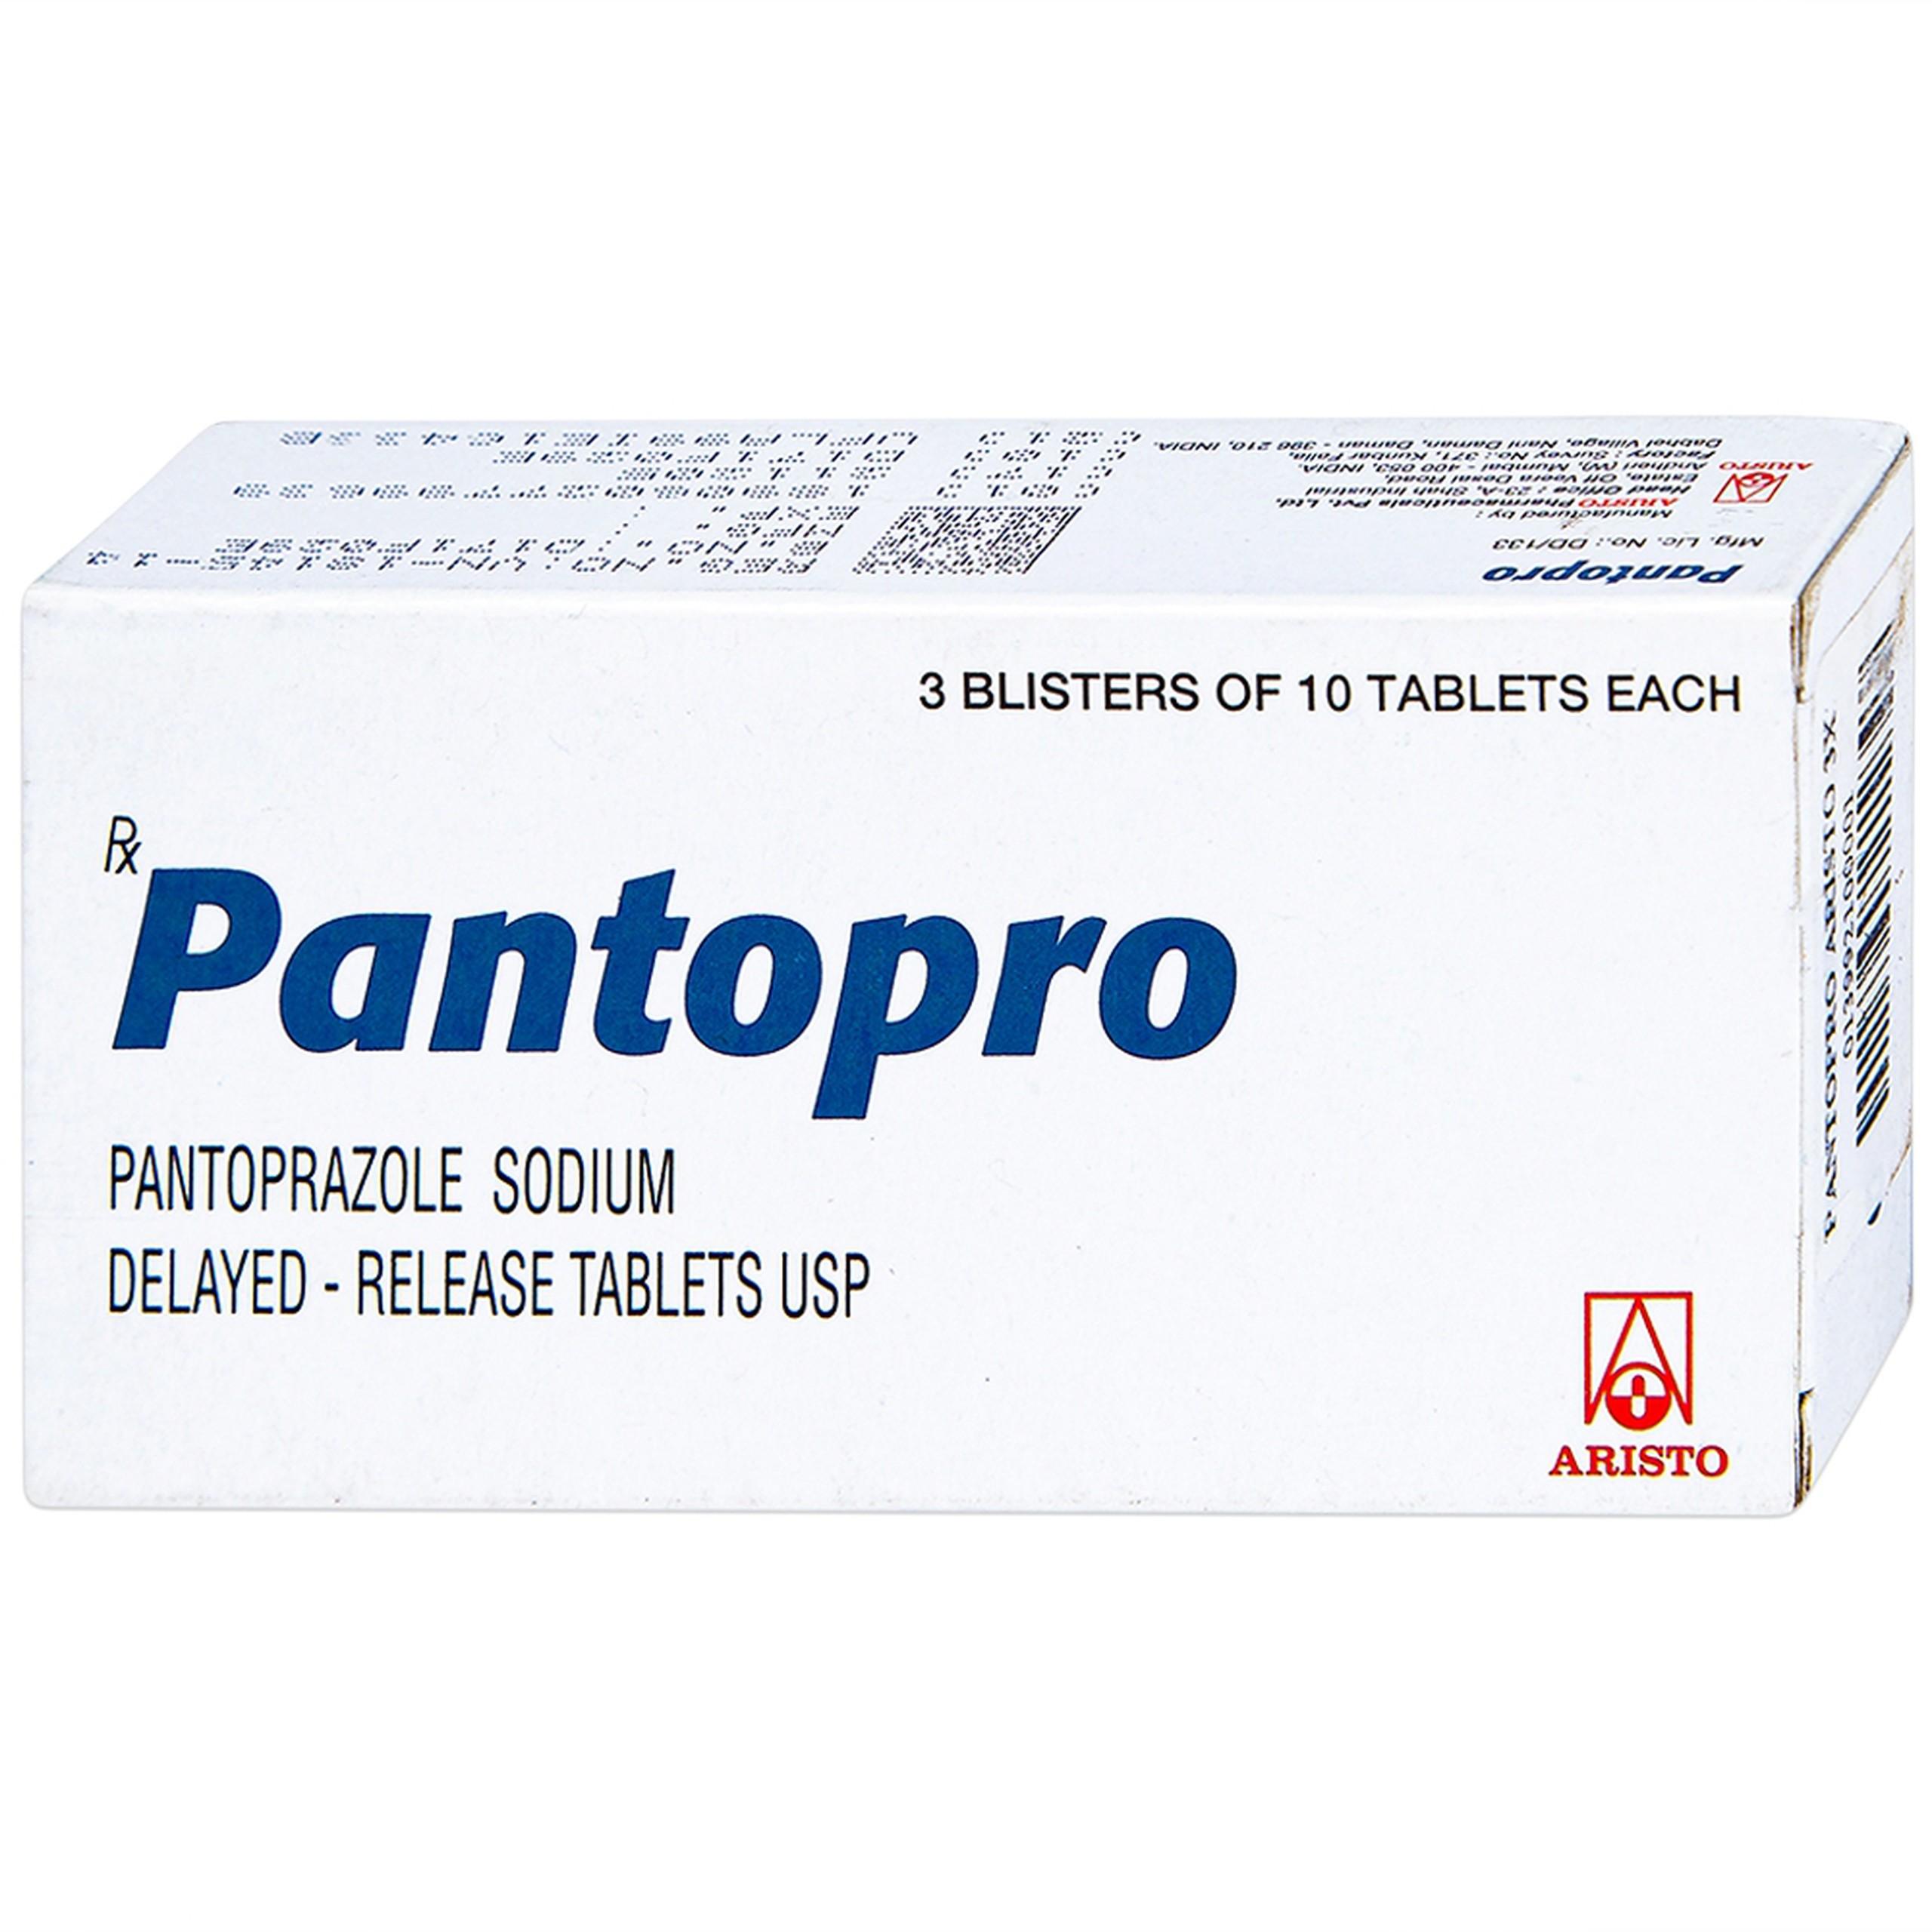 Thuốc Pantopro Aristo điều trị ngắn hạn loét tá tràng, loét dạ dày (3 vỉ x 10 viên) 